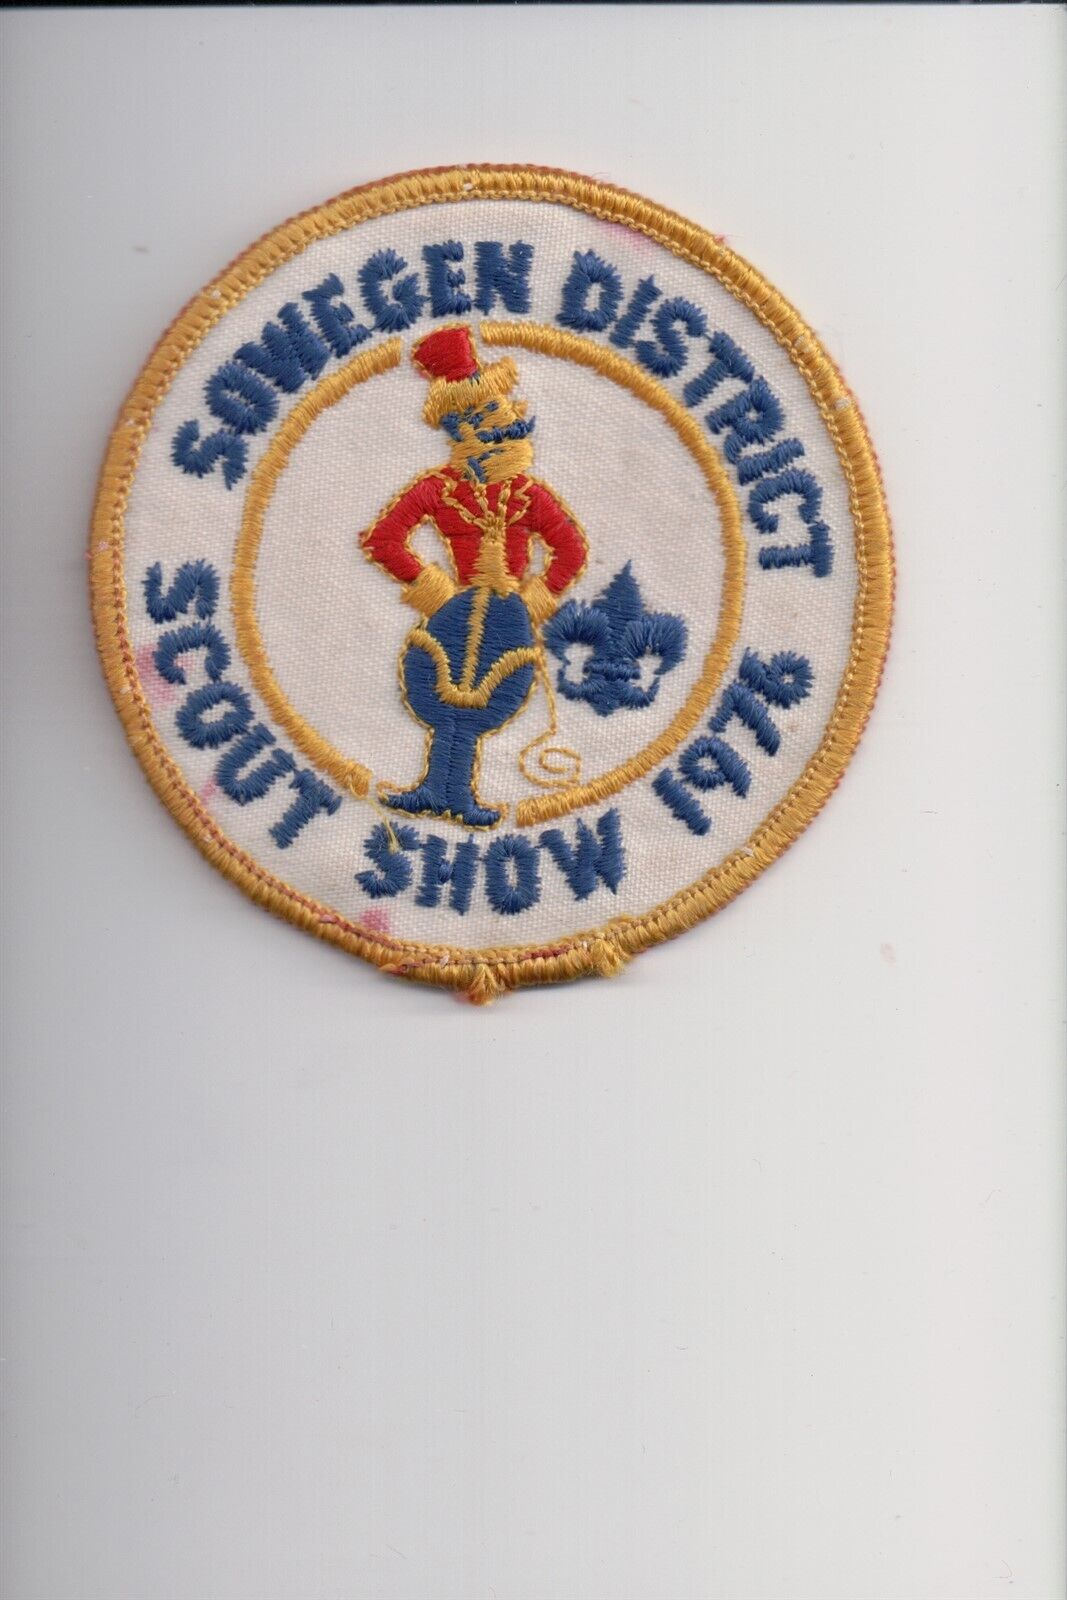 1976 Sowegen District Scout Show patch